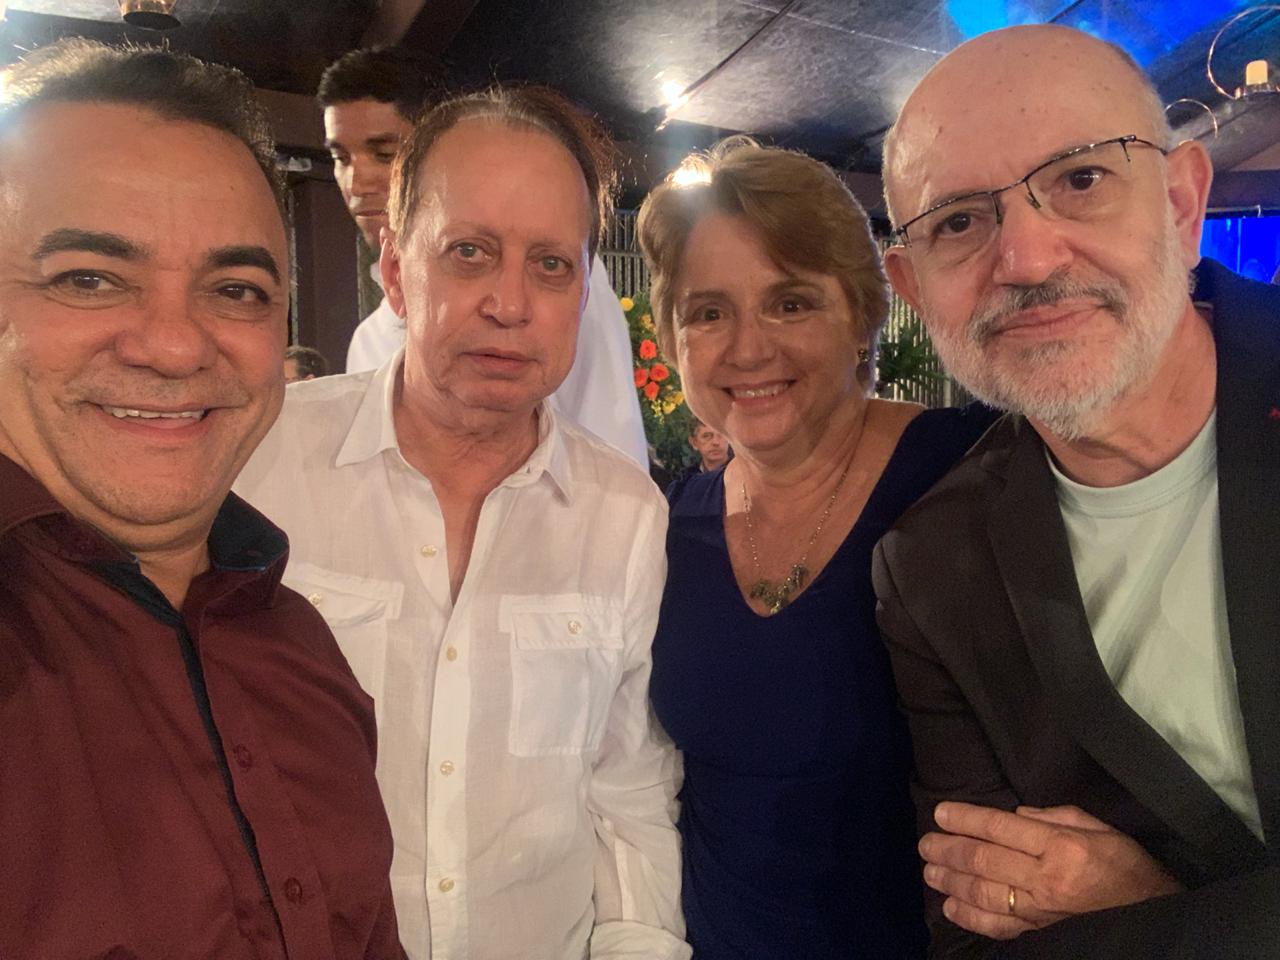 WhatsApp Image 2019 09 22 at 10.04.40 2 - Políticos e empresários comemoram os 90 anos de Zé Cavalcanti, em Cajazeiras - VEJA FOTOS E VÍDEOS 